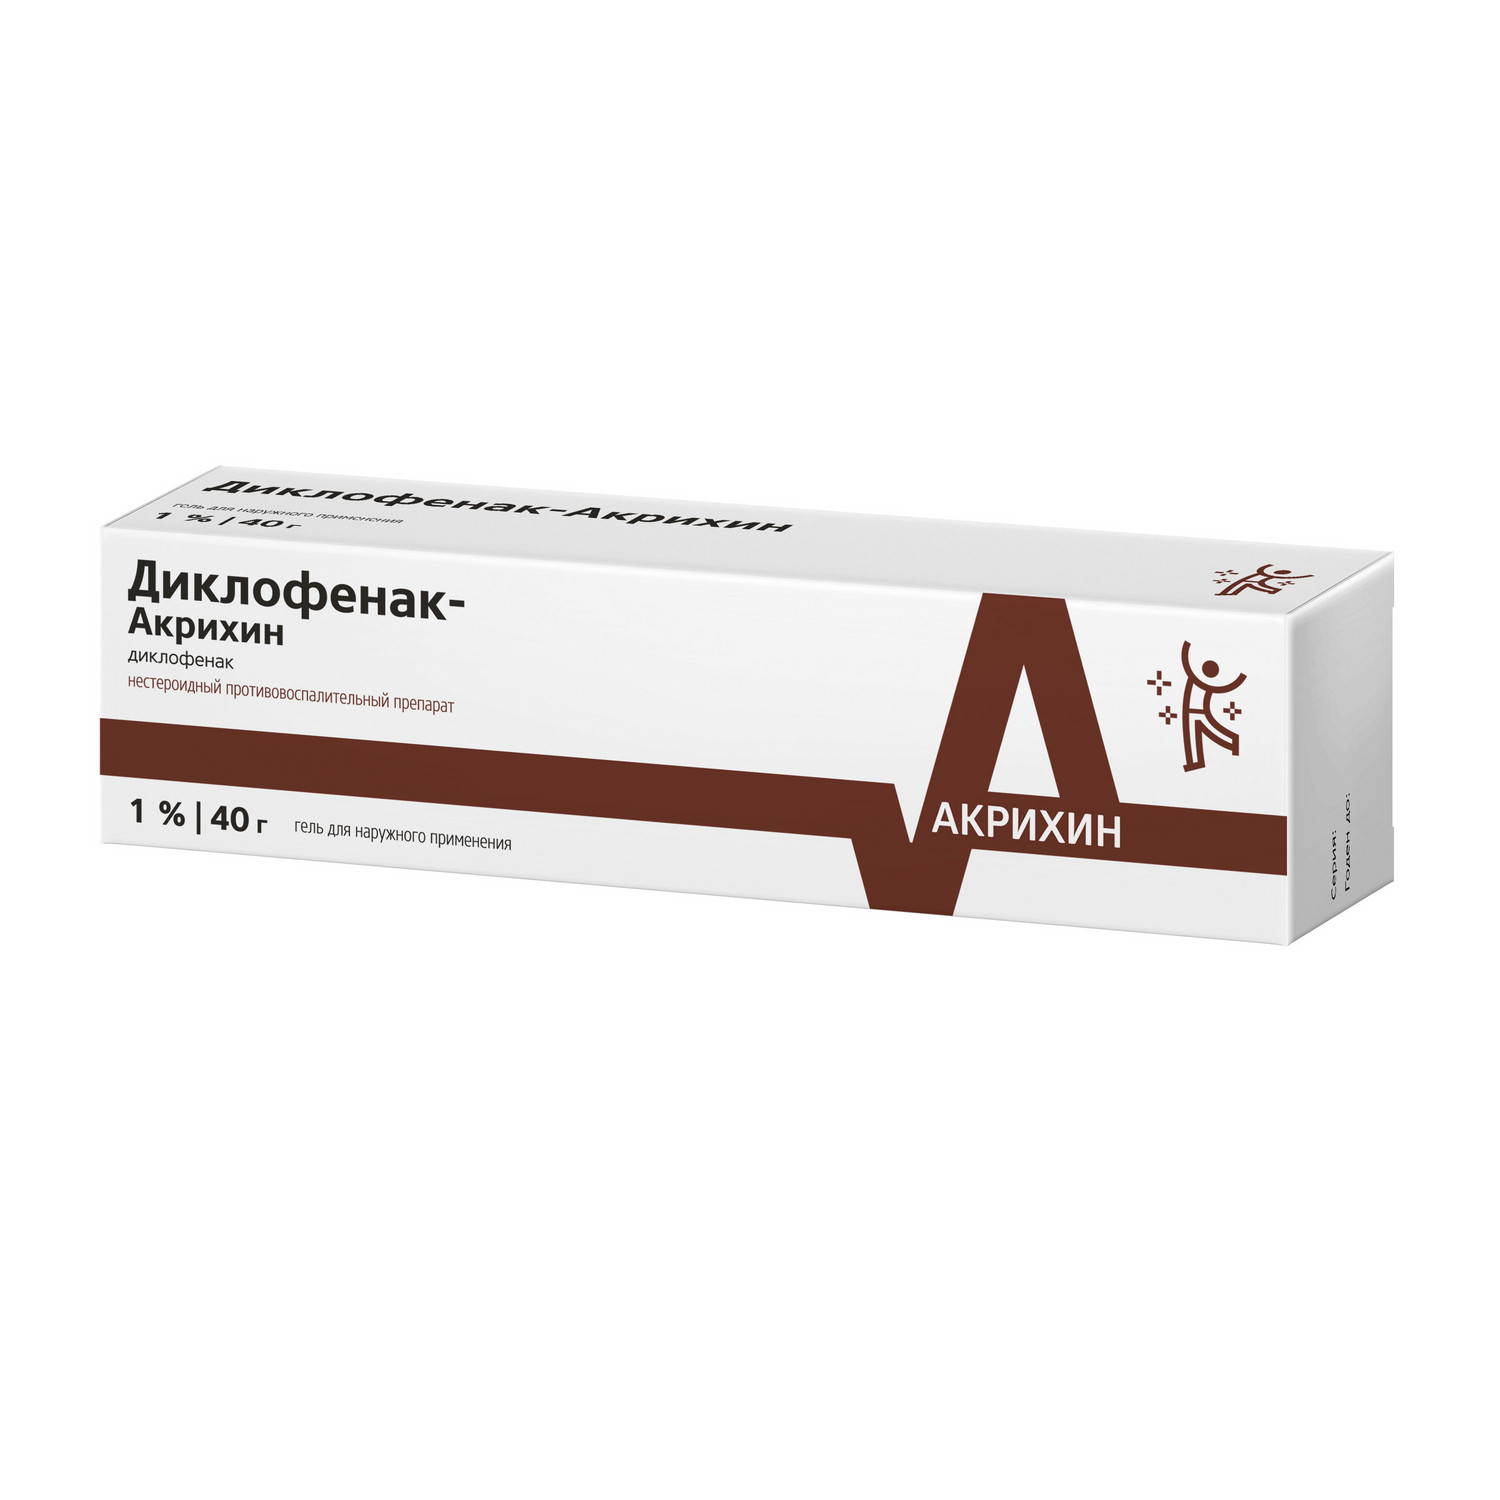 Диклофенак-Акрихин гель 1% 40г диклофенак гель для нар прим 1% туба 40г